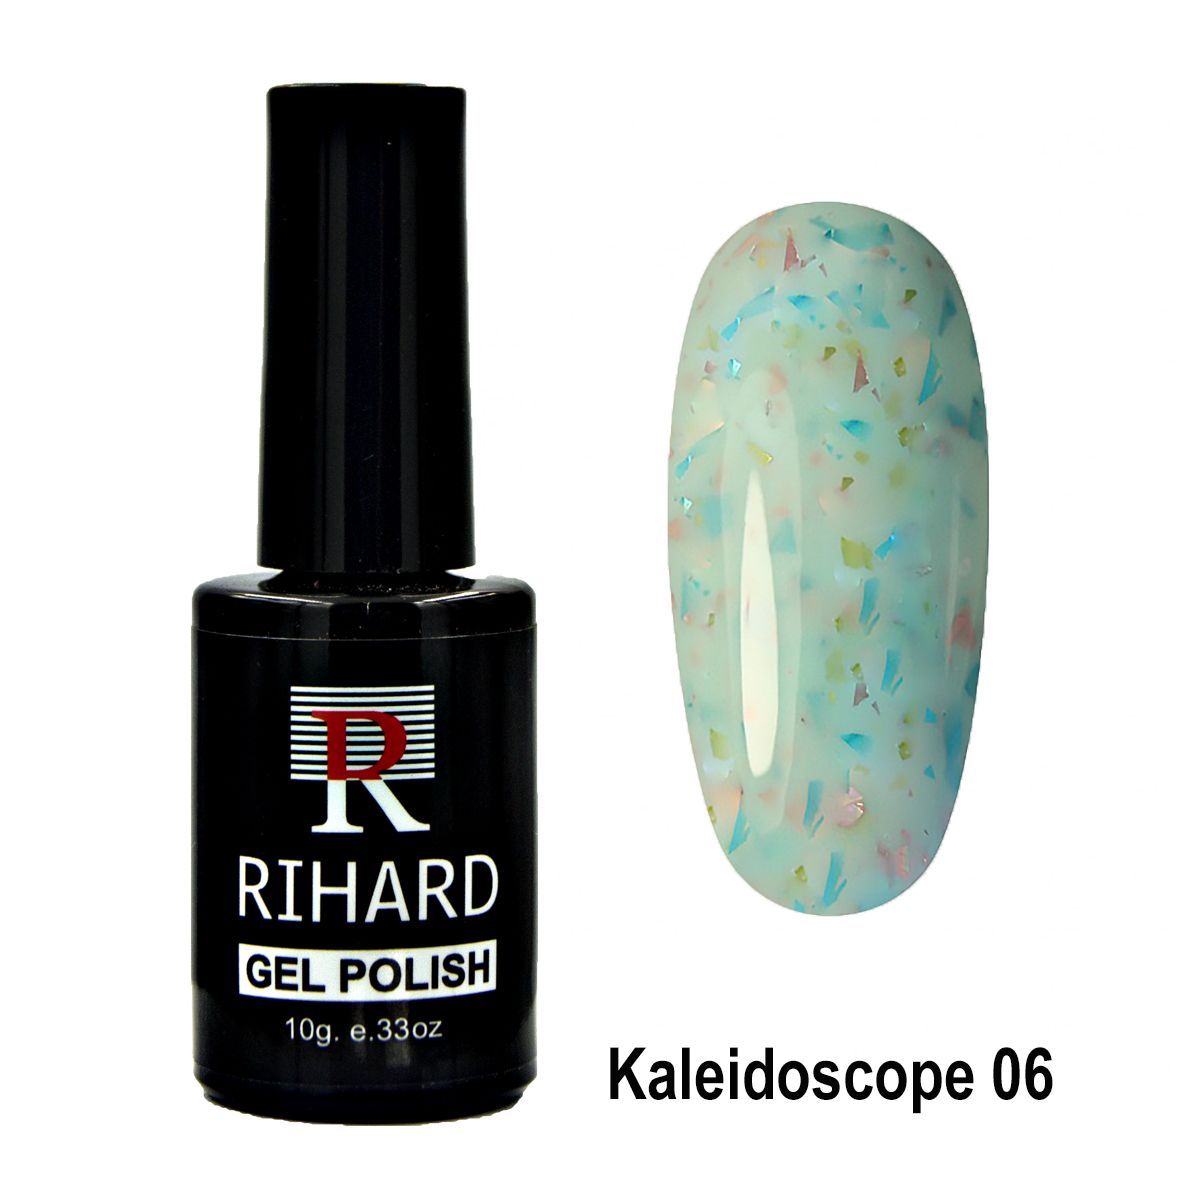 Rihard Gel Polish Kaleidoscope 06 82484